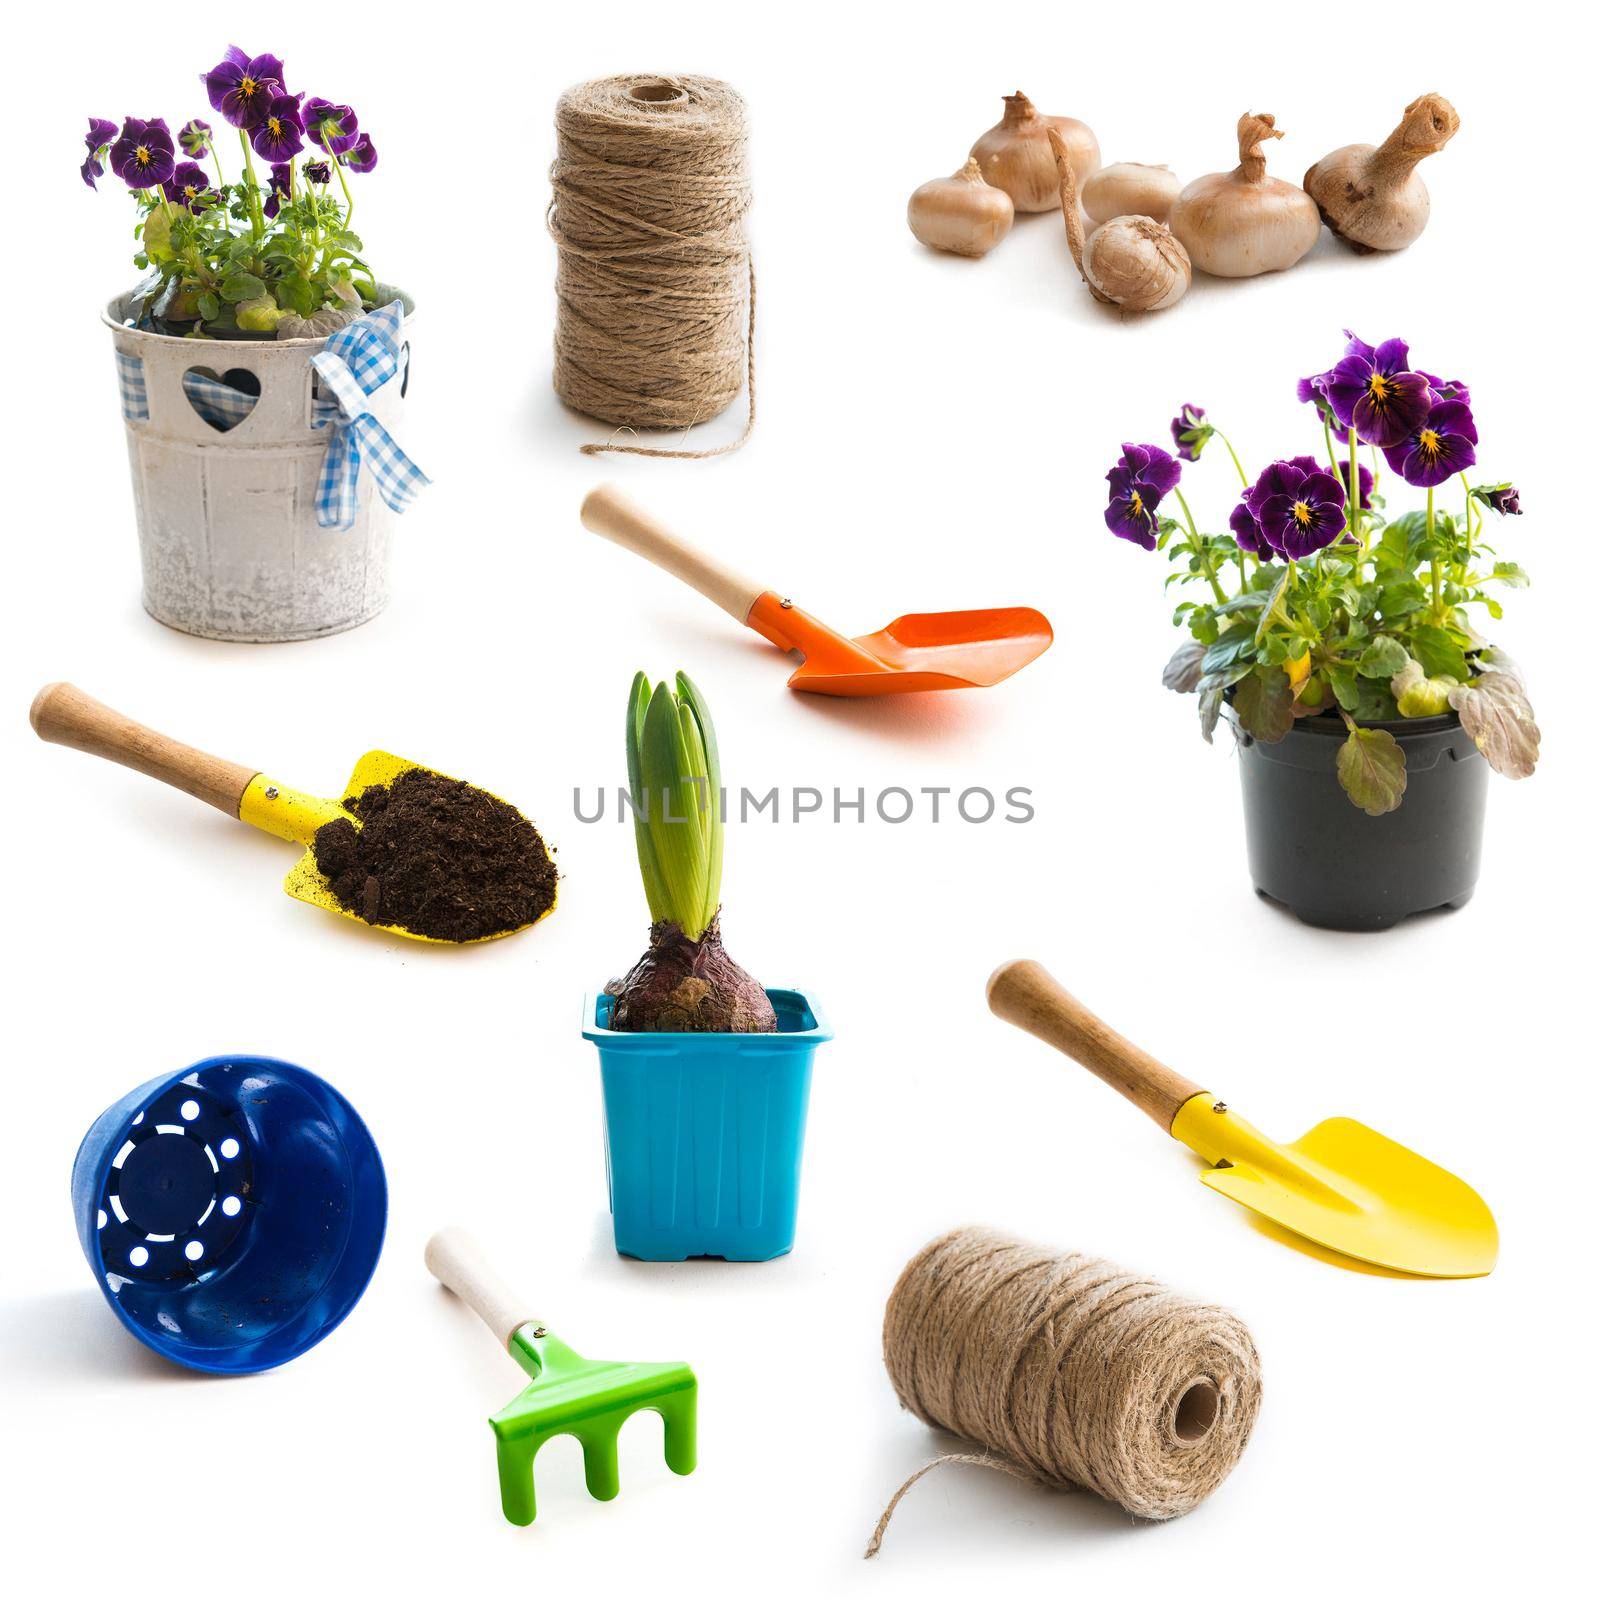 objects for gardening by tan4ikk1